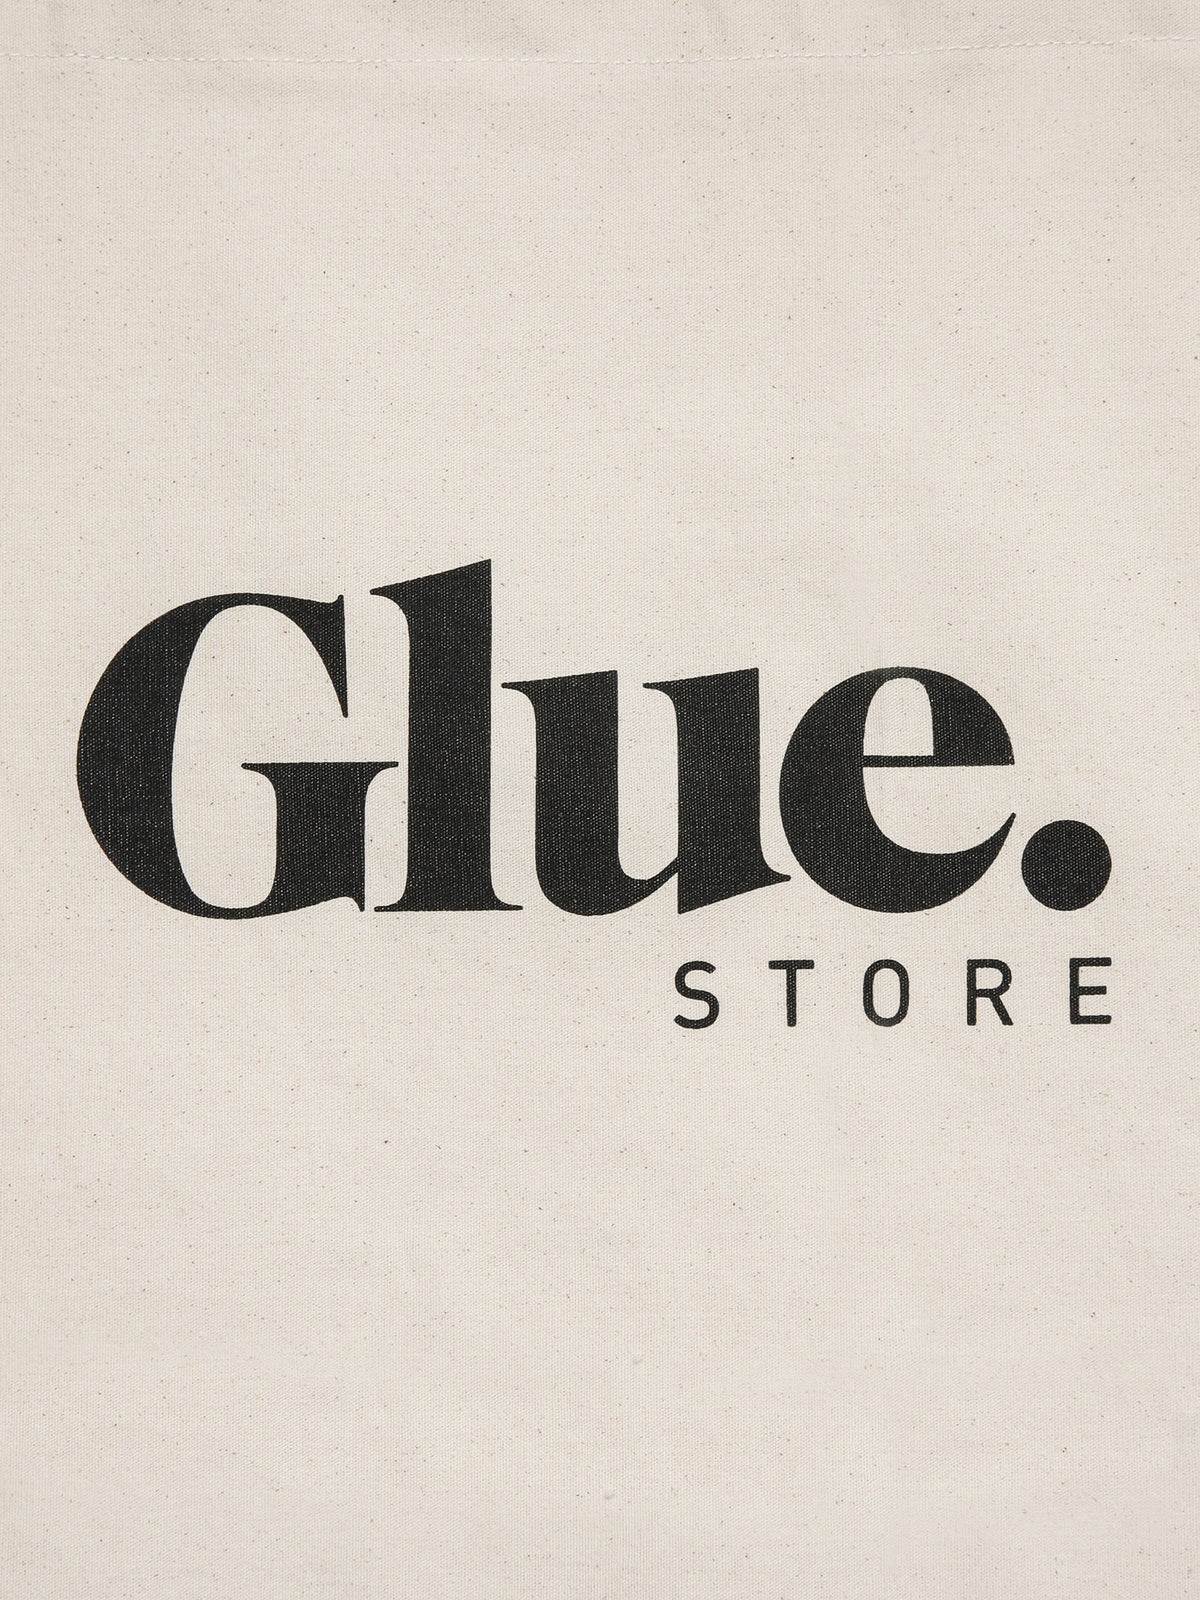 Large Glue Store Tote Bag